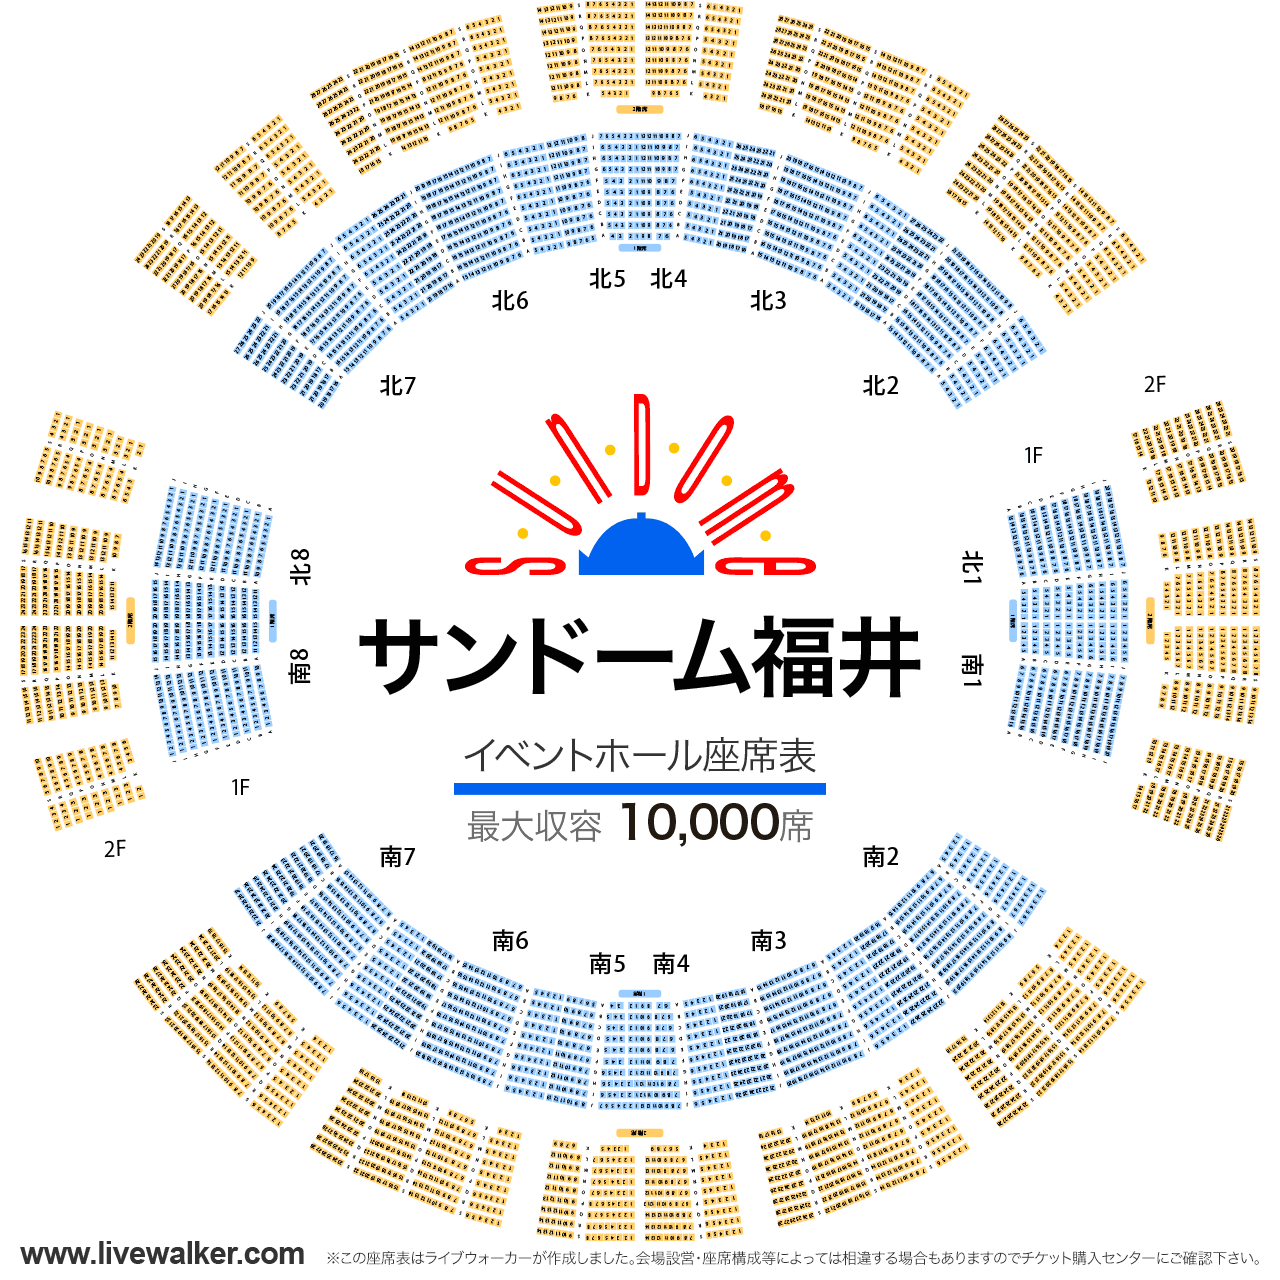 サンドーム福井イベントホールの座席表